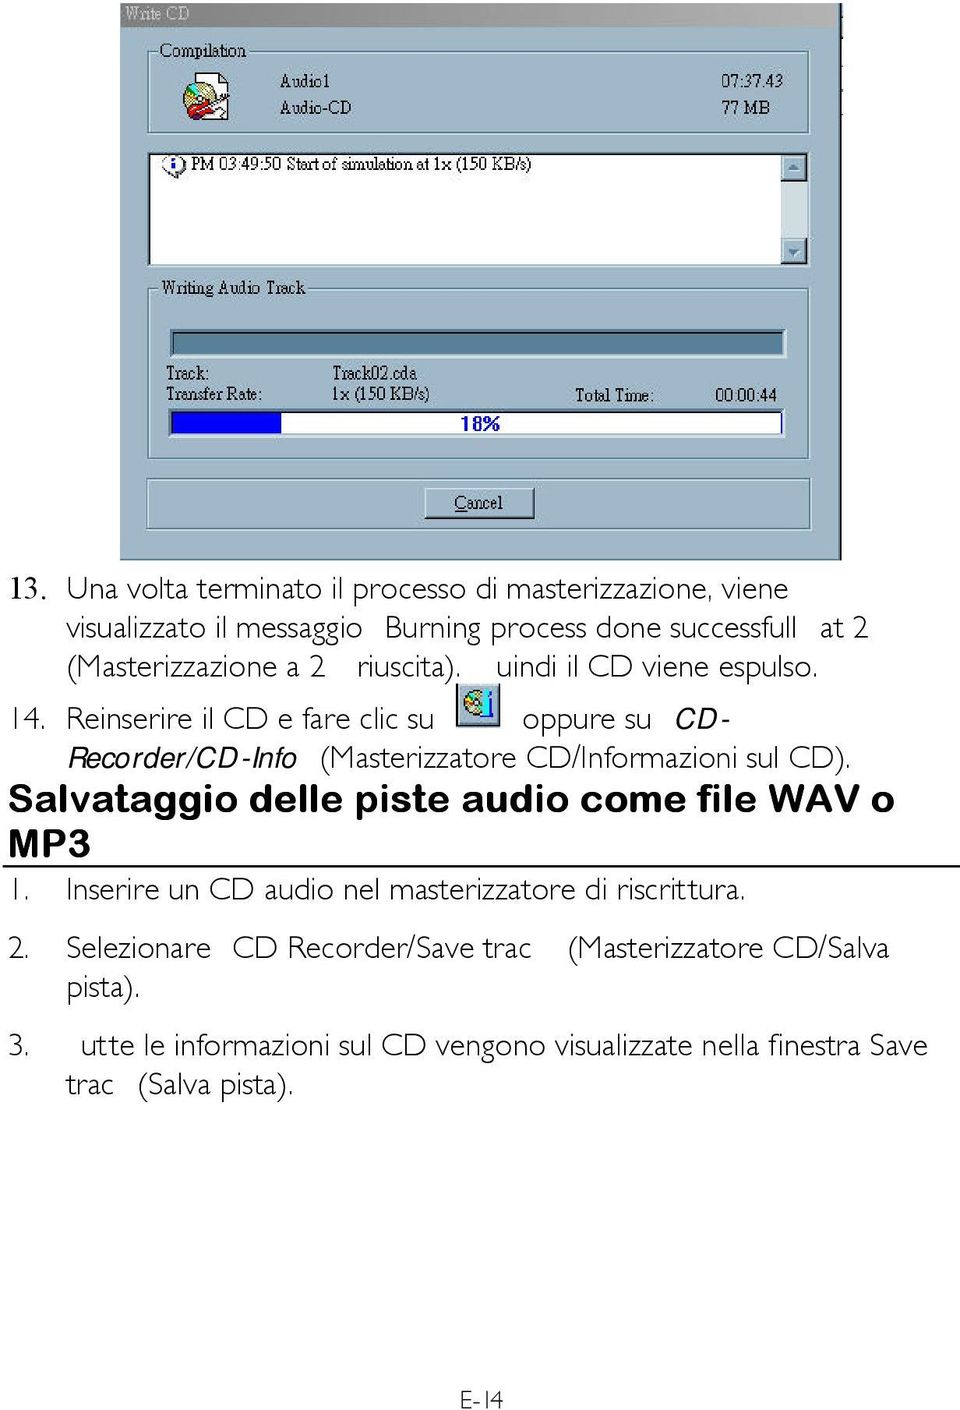 Reinserire il CD e fare clic su oppure su CD- Recorder/CD-Info (Masterizzatore CD/Informazioni sul CD).